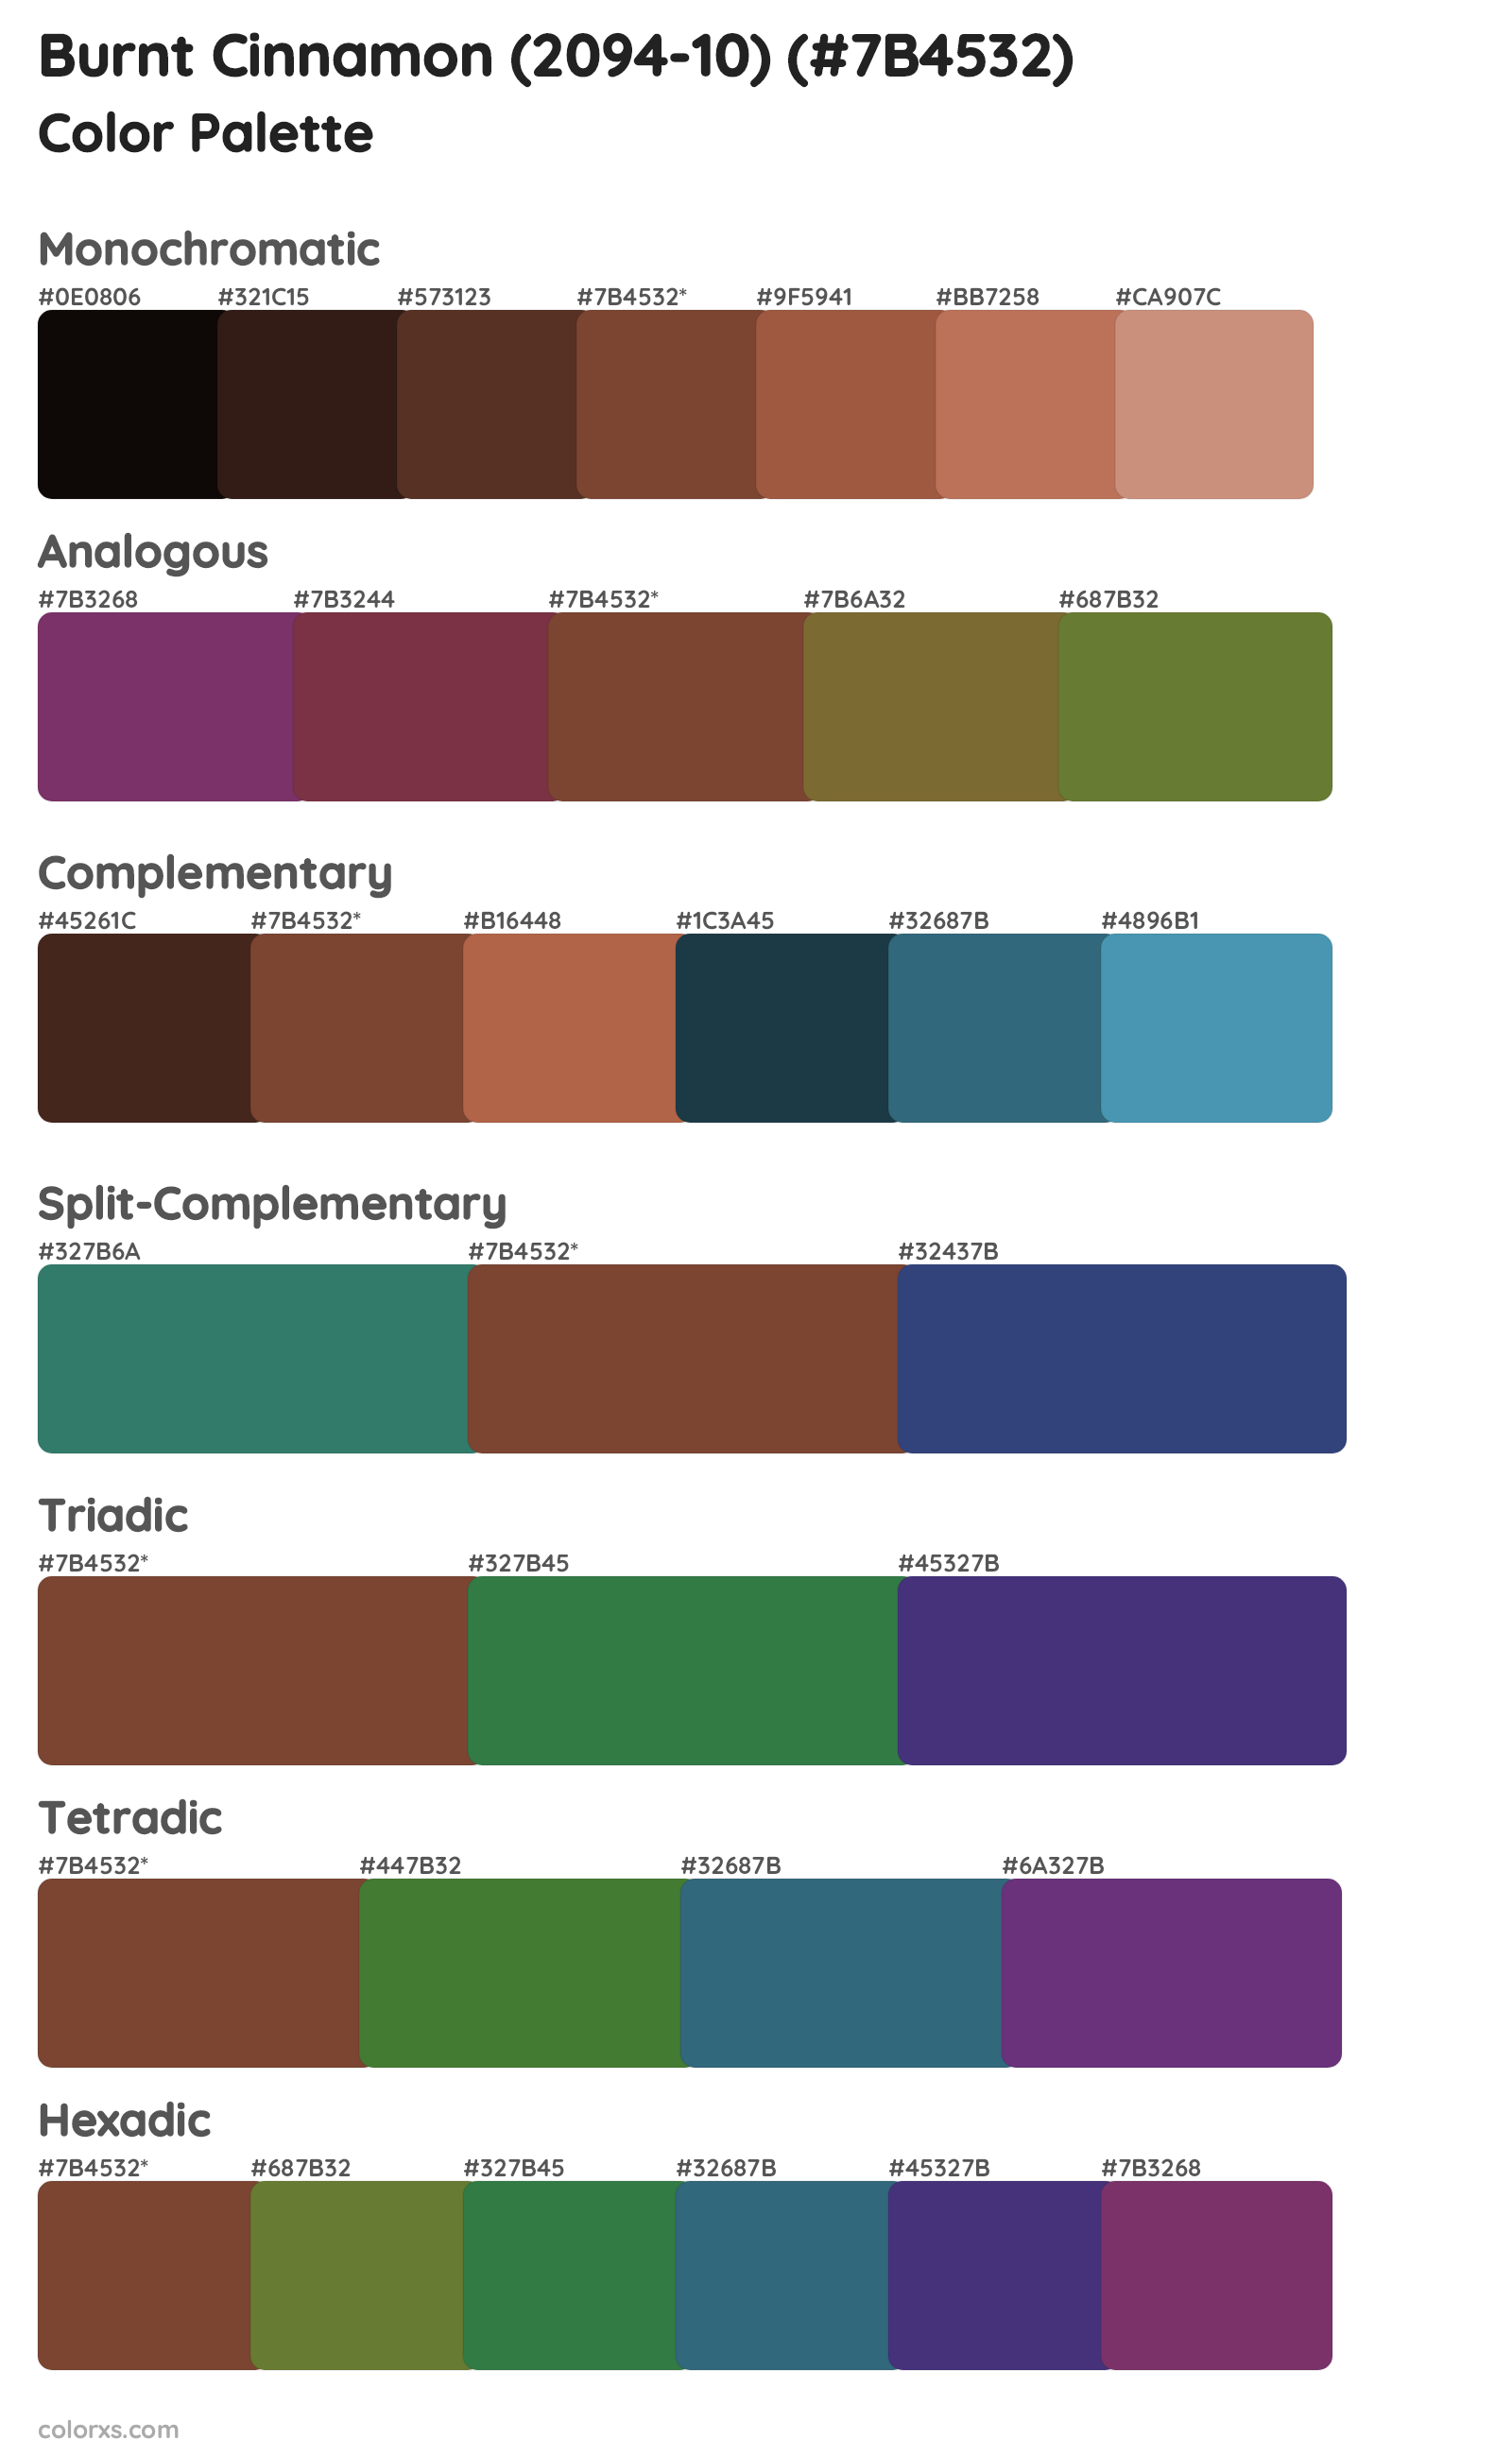 Burnt Cinnamon (2094-10) Color Scheme Palettes